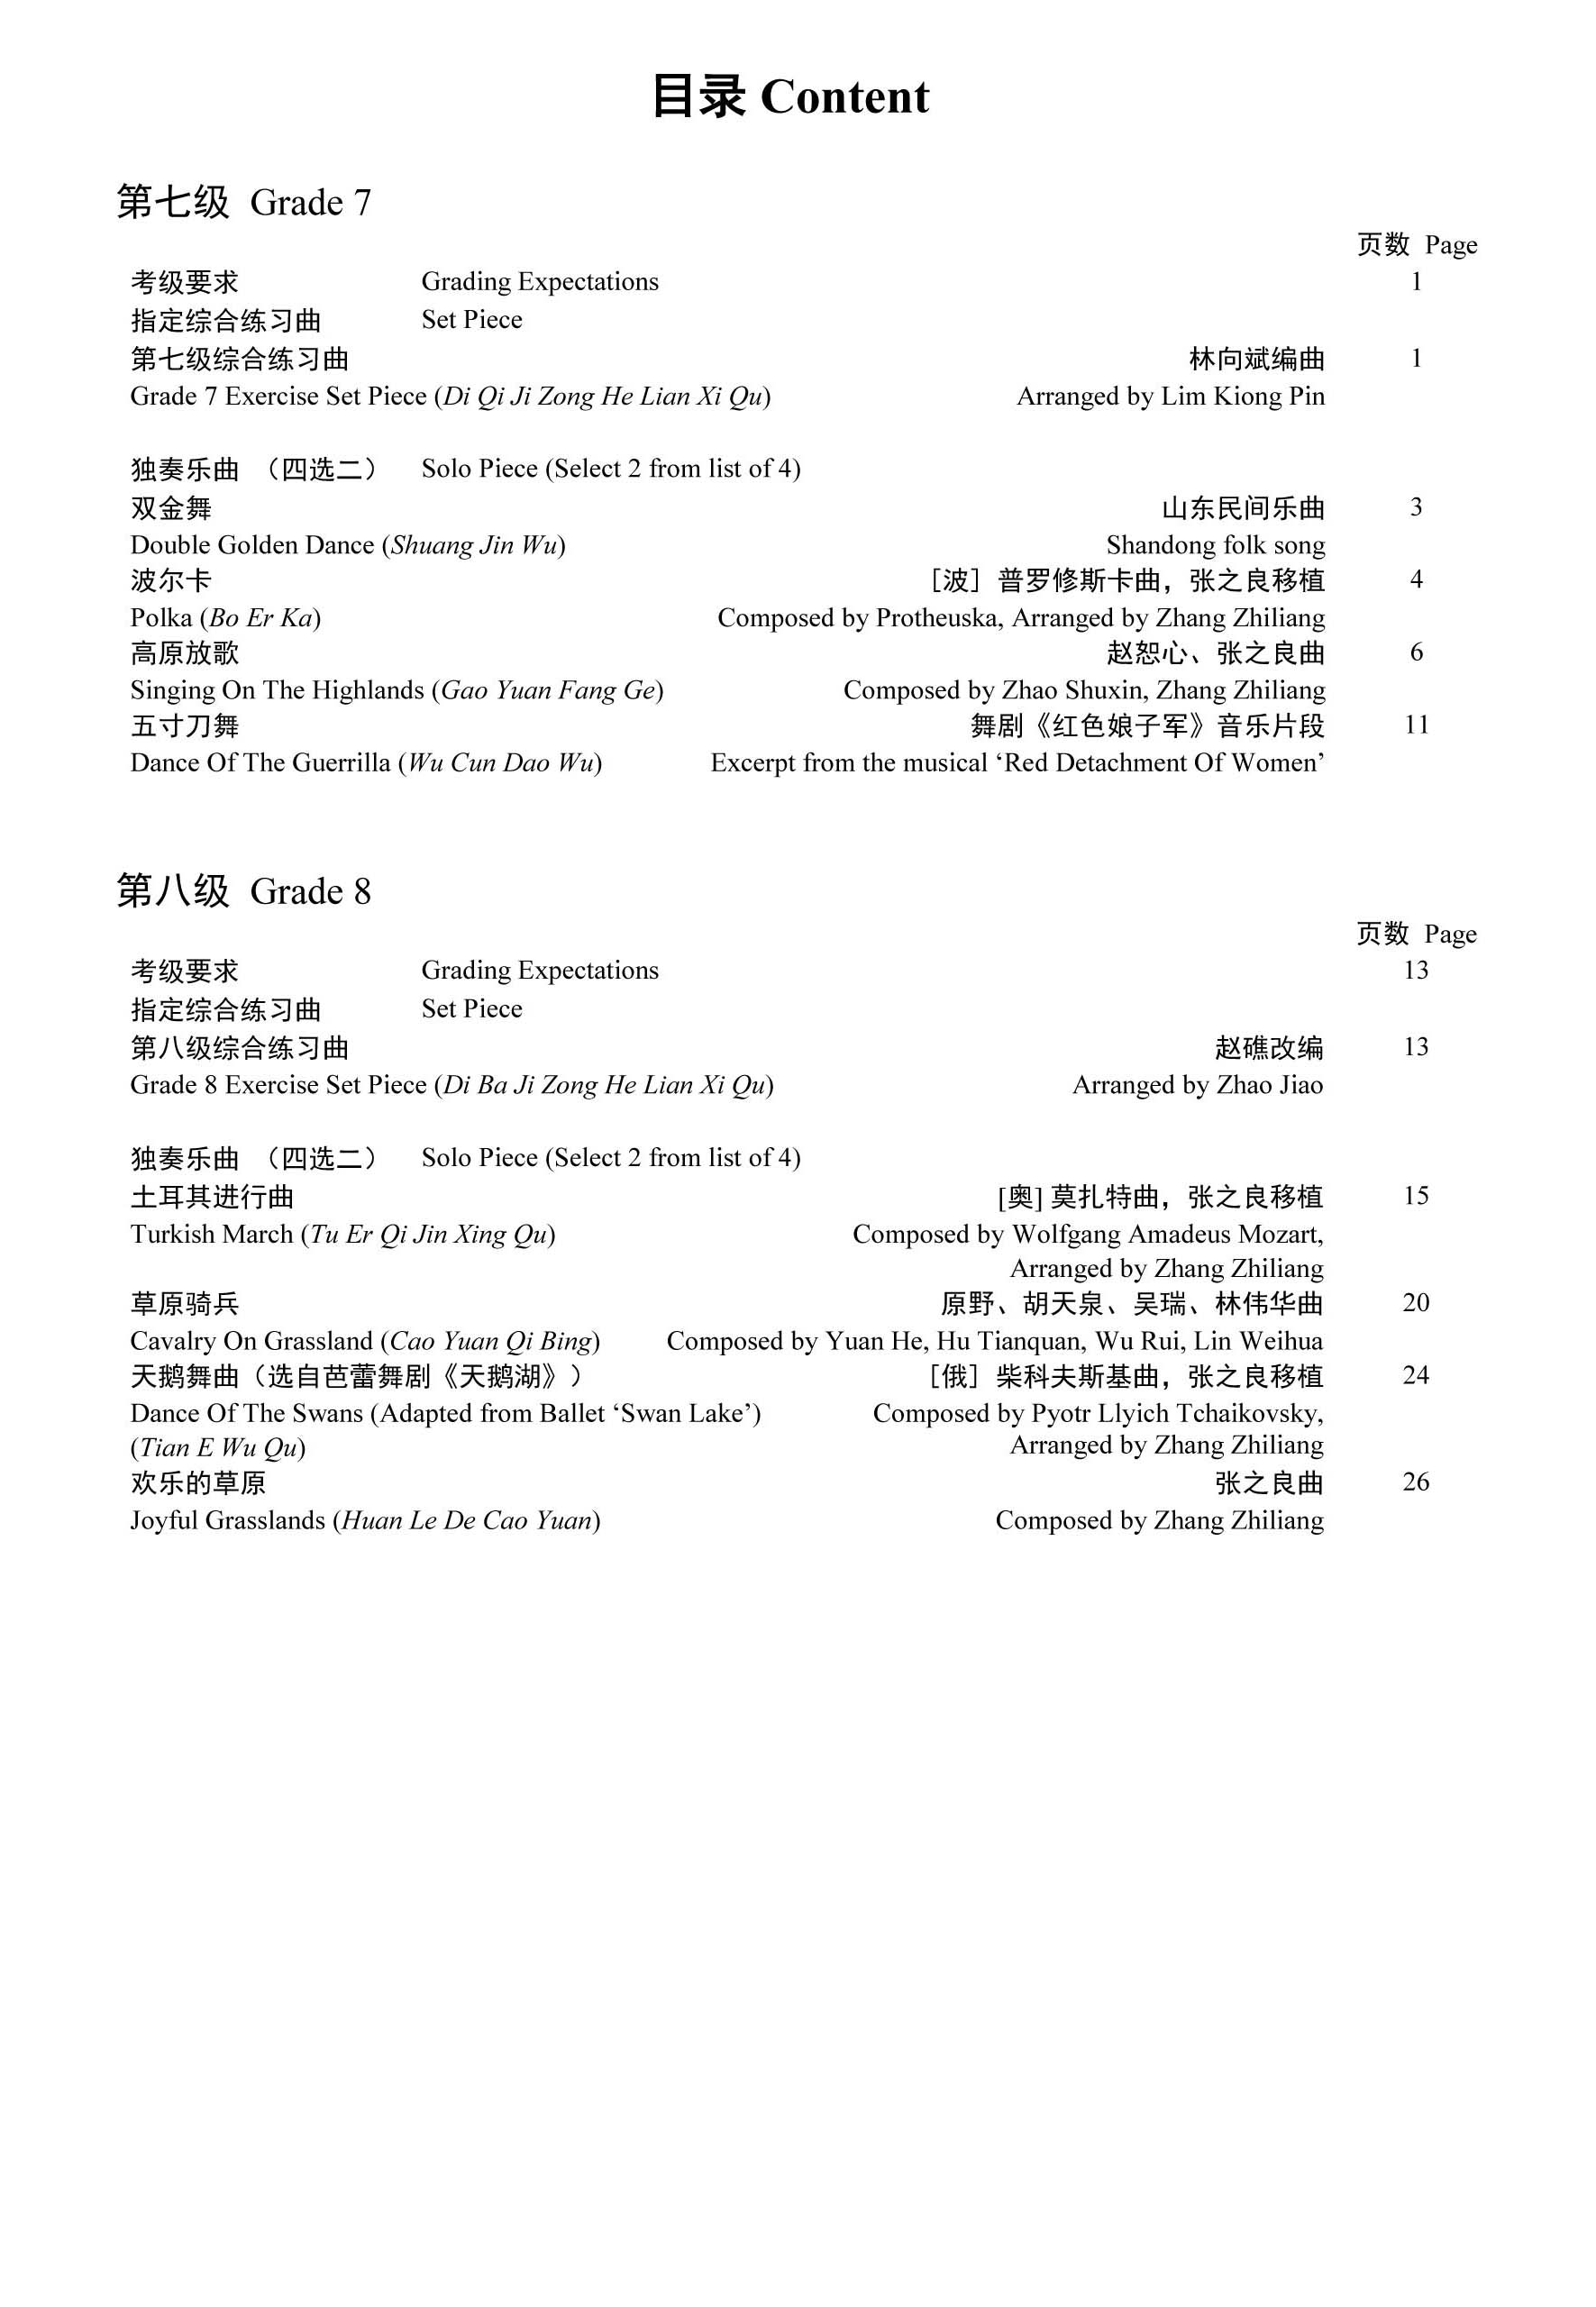 Gaoyin Sheng Grading Examination Book by Teng (Intermediate Grade 7-8) Content Page